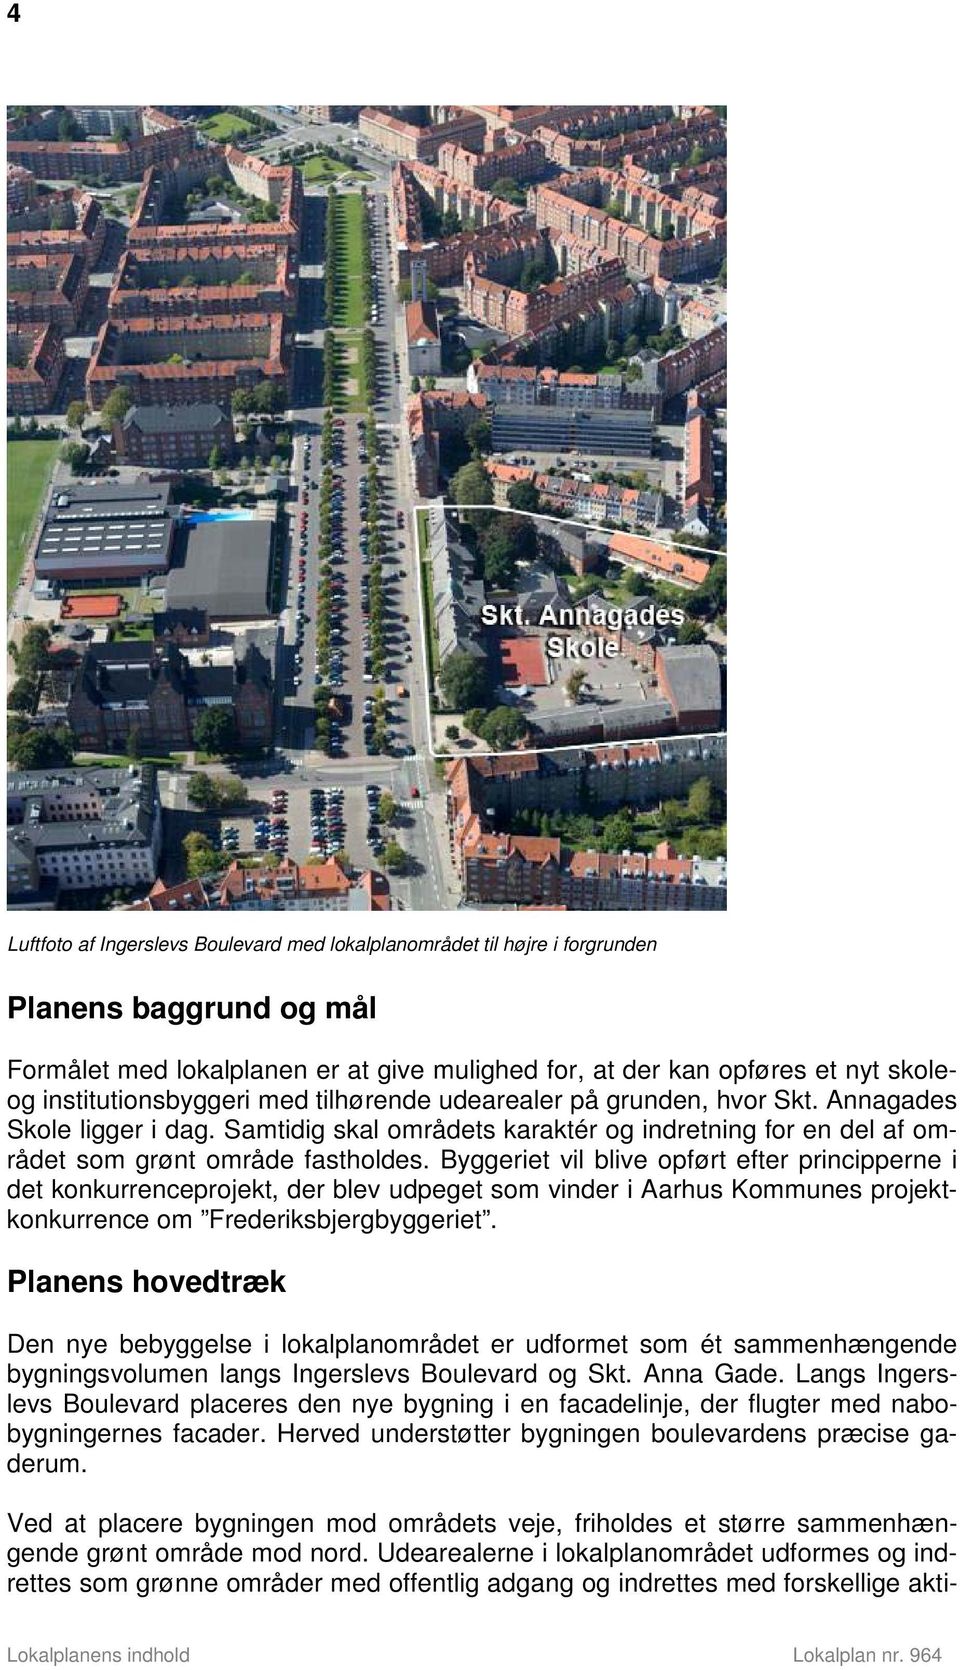 Byggeriet vil blive opført efter principperne i det konkurrenceprojekt, der blev udpeget som vinder i Aarhus Kommunes projektkonkurrence om Frederiksbjergbyggeriet.